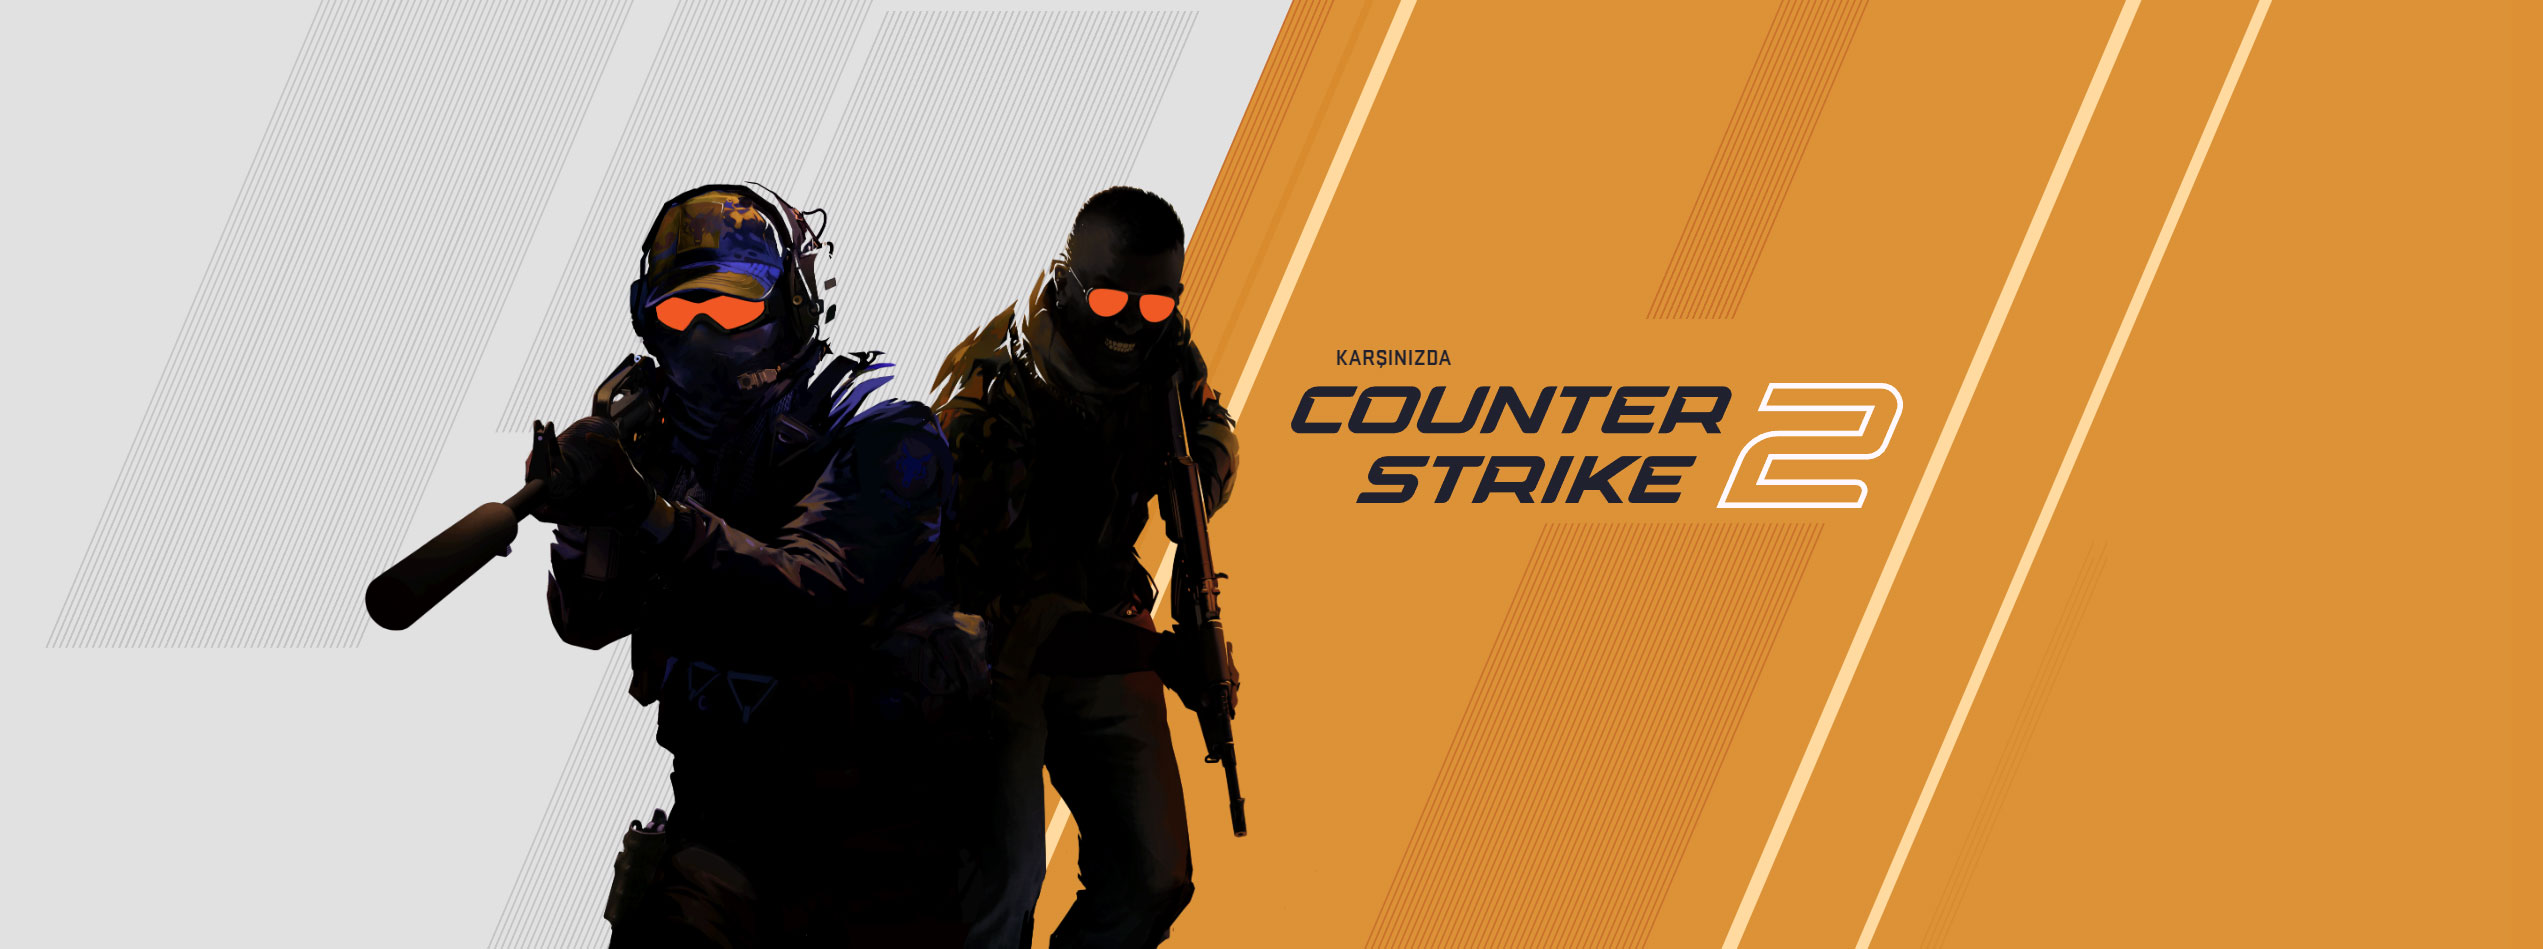 Counter-Strike 2 Sistem Gereksinimleri